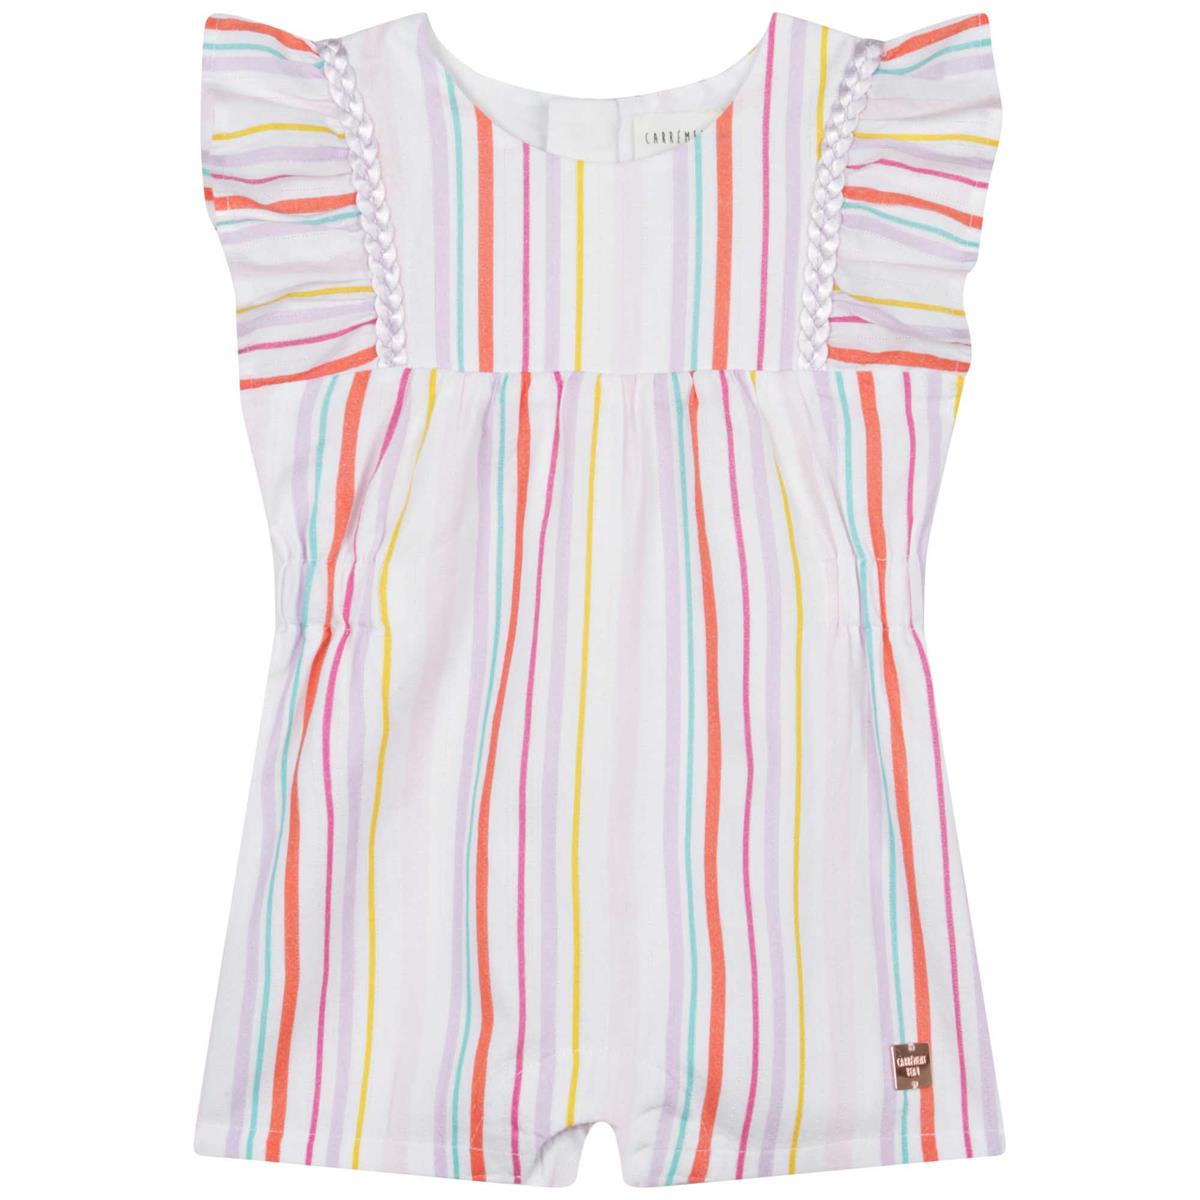 Girls Multicolor Stripes Babysuit